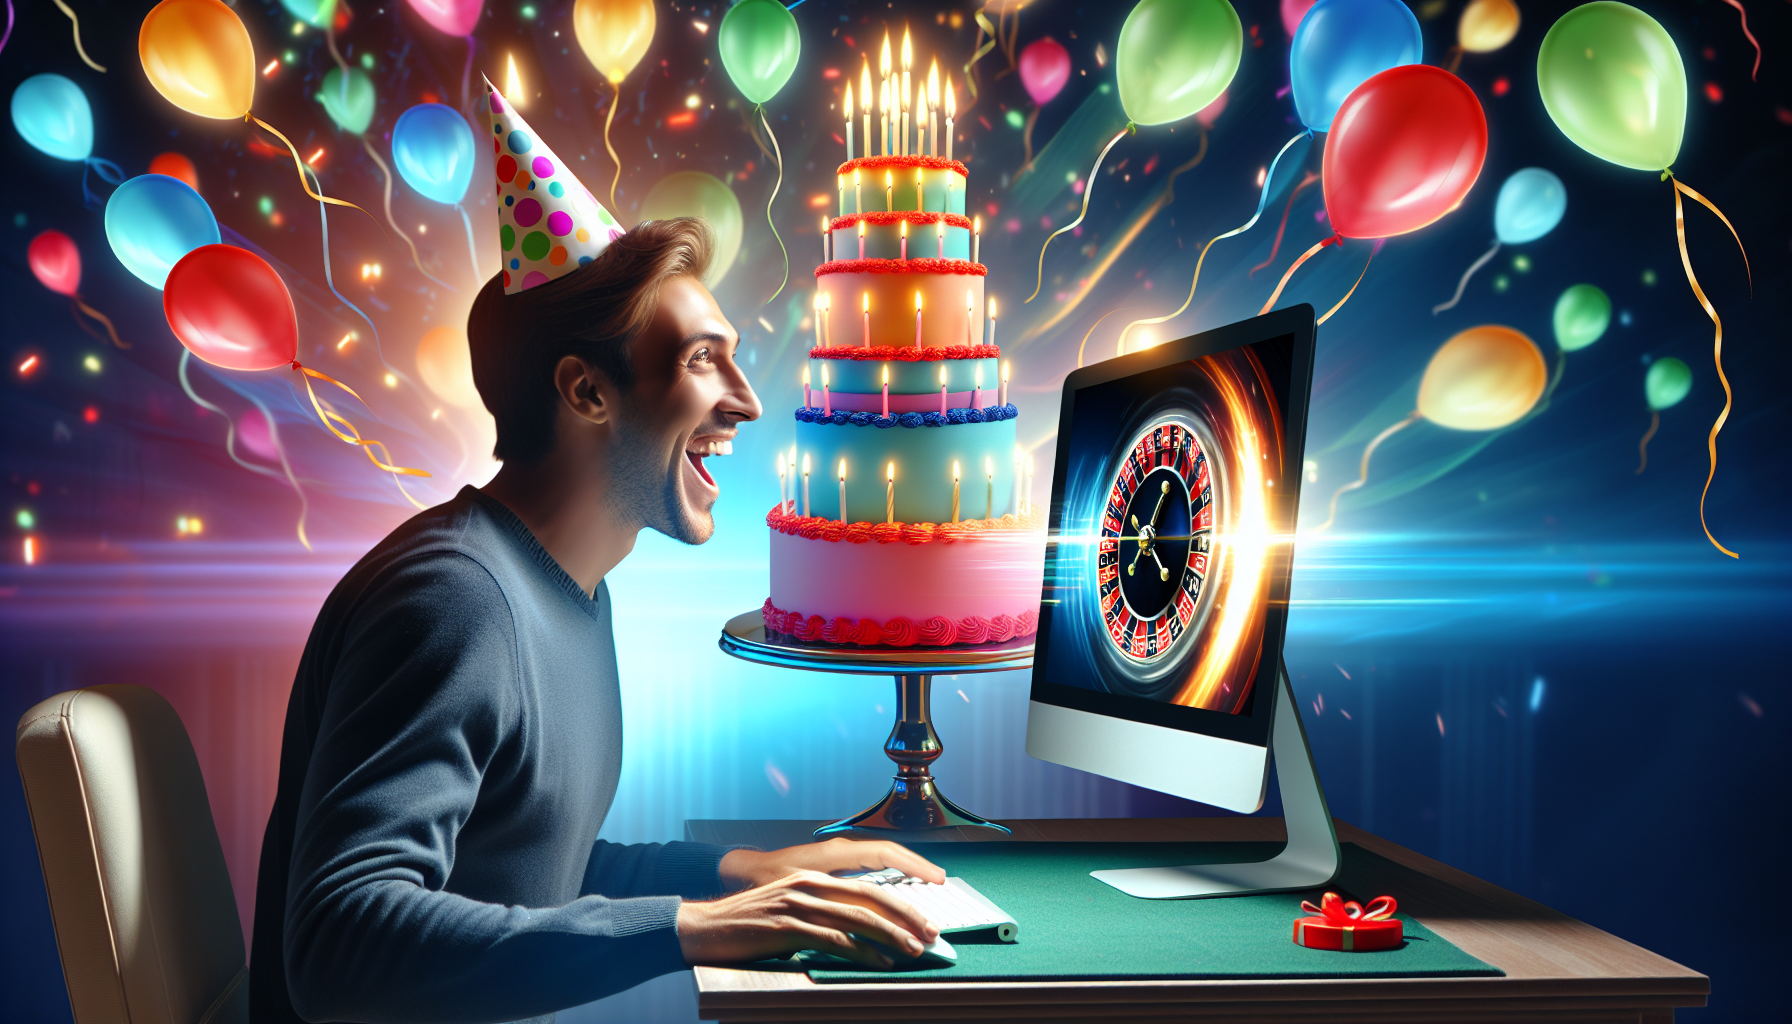 Ilustración de una persona reclamando un bono de cumpleaños en un casino en línea